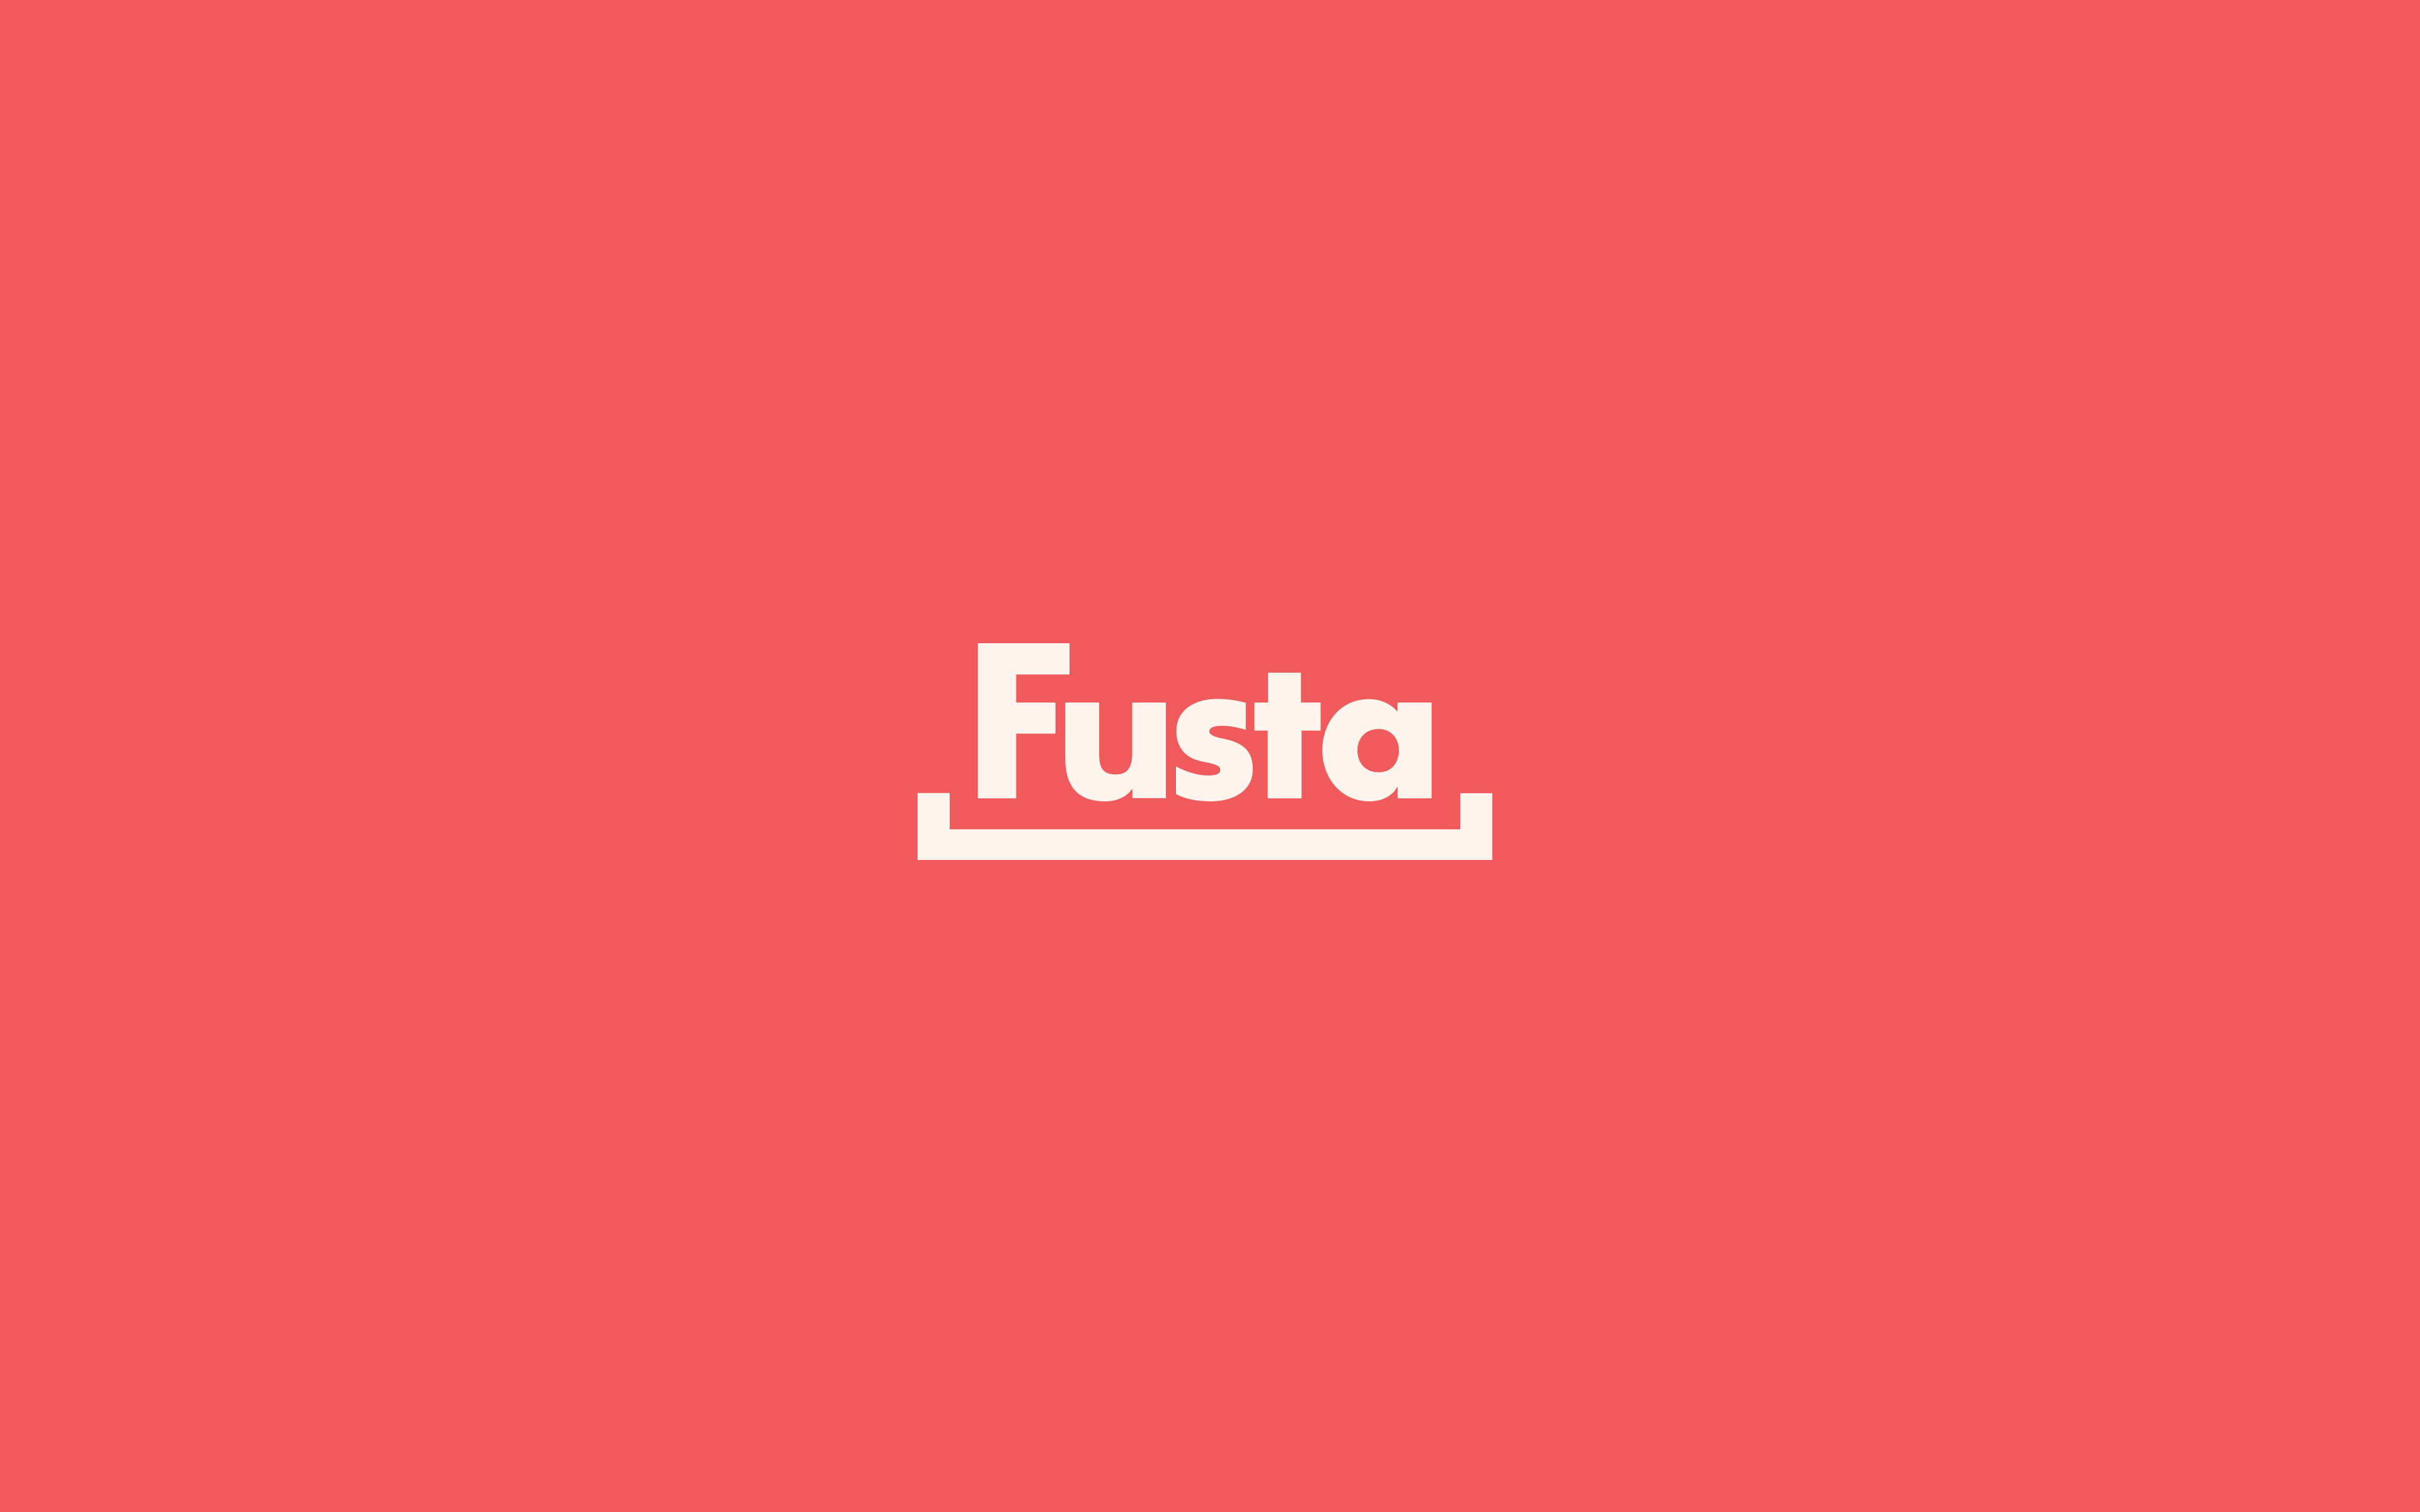 Fusta. Name. Design Agency.